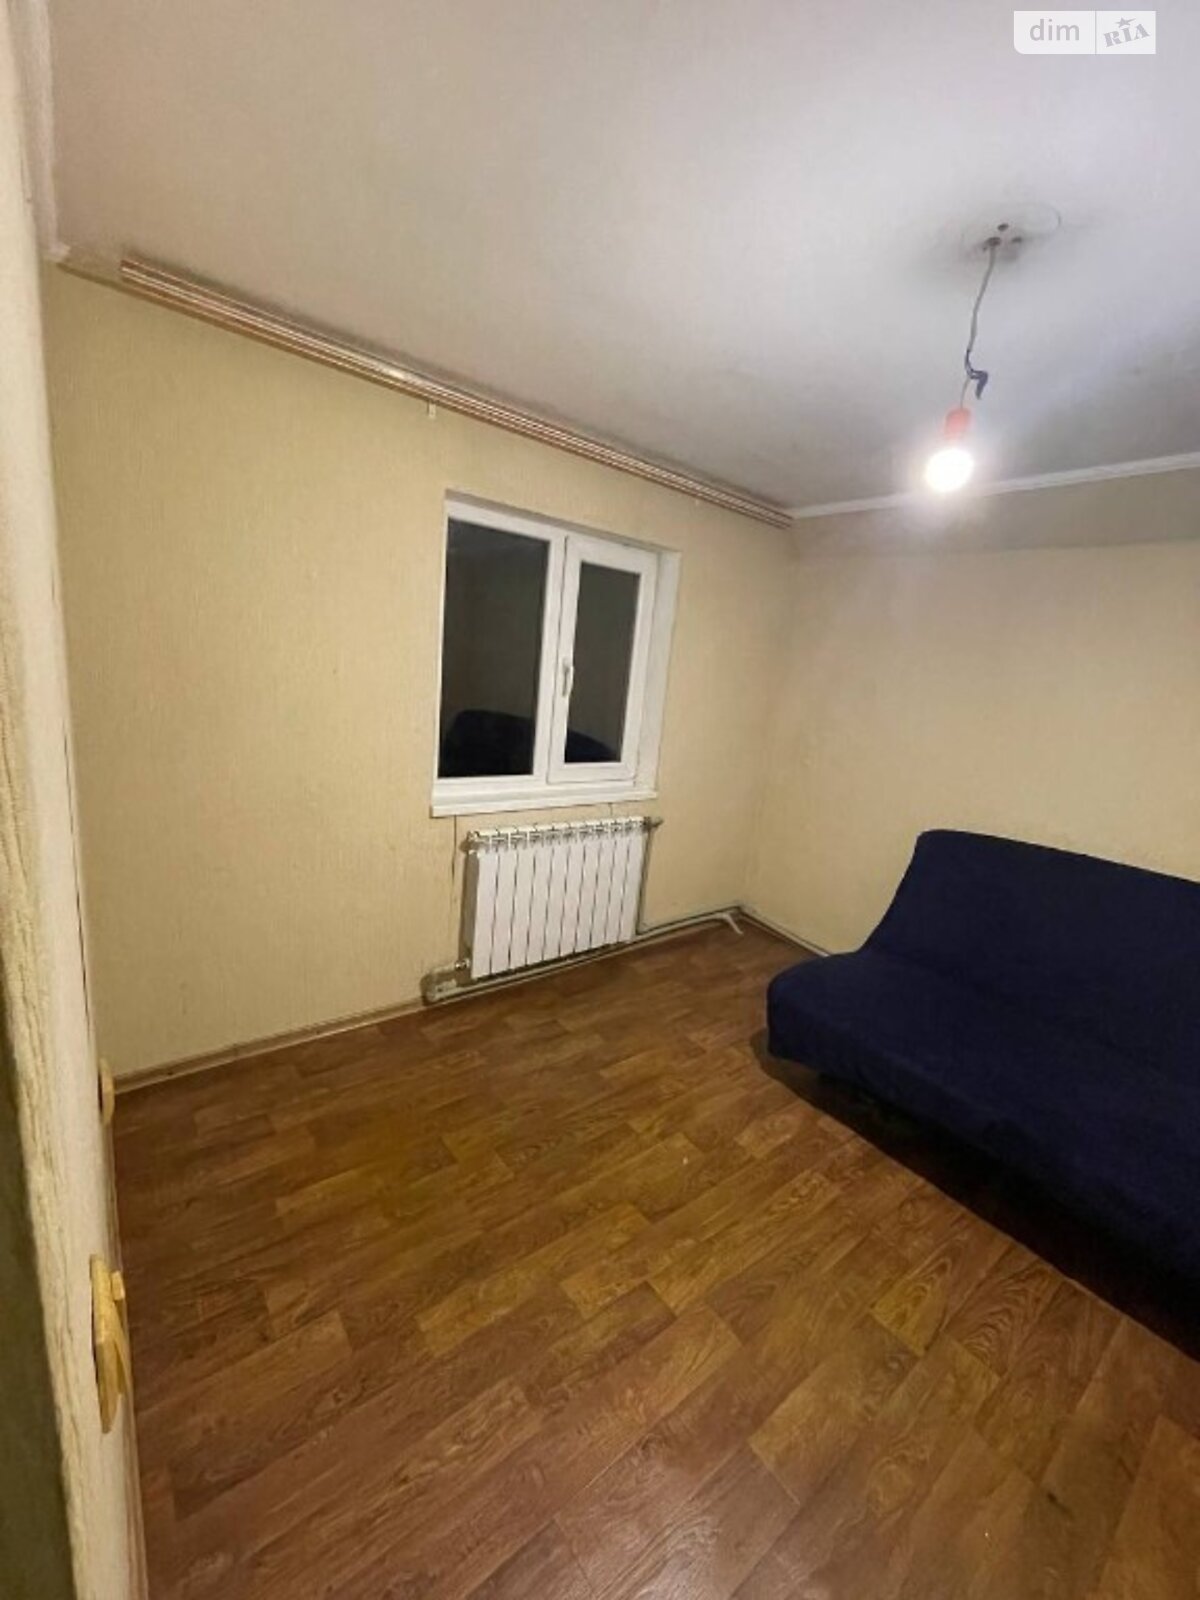 Продажа части дома в Запорожье, улица Святоволодимиривська, 4 комнаты фото 1